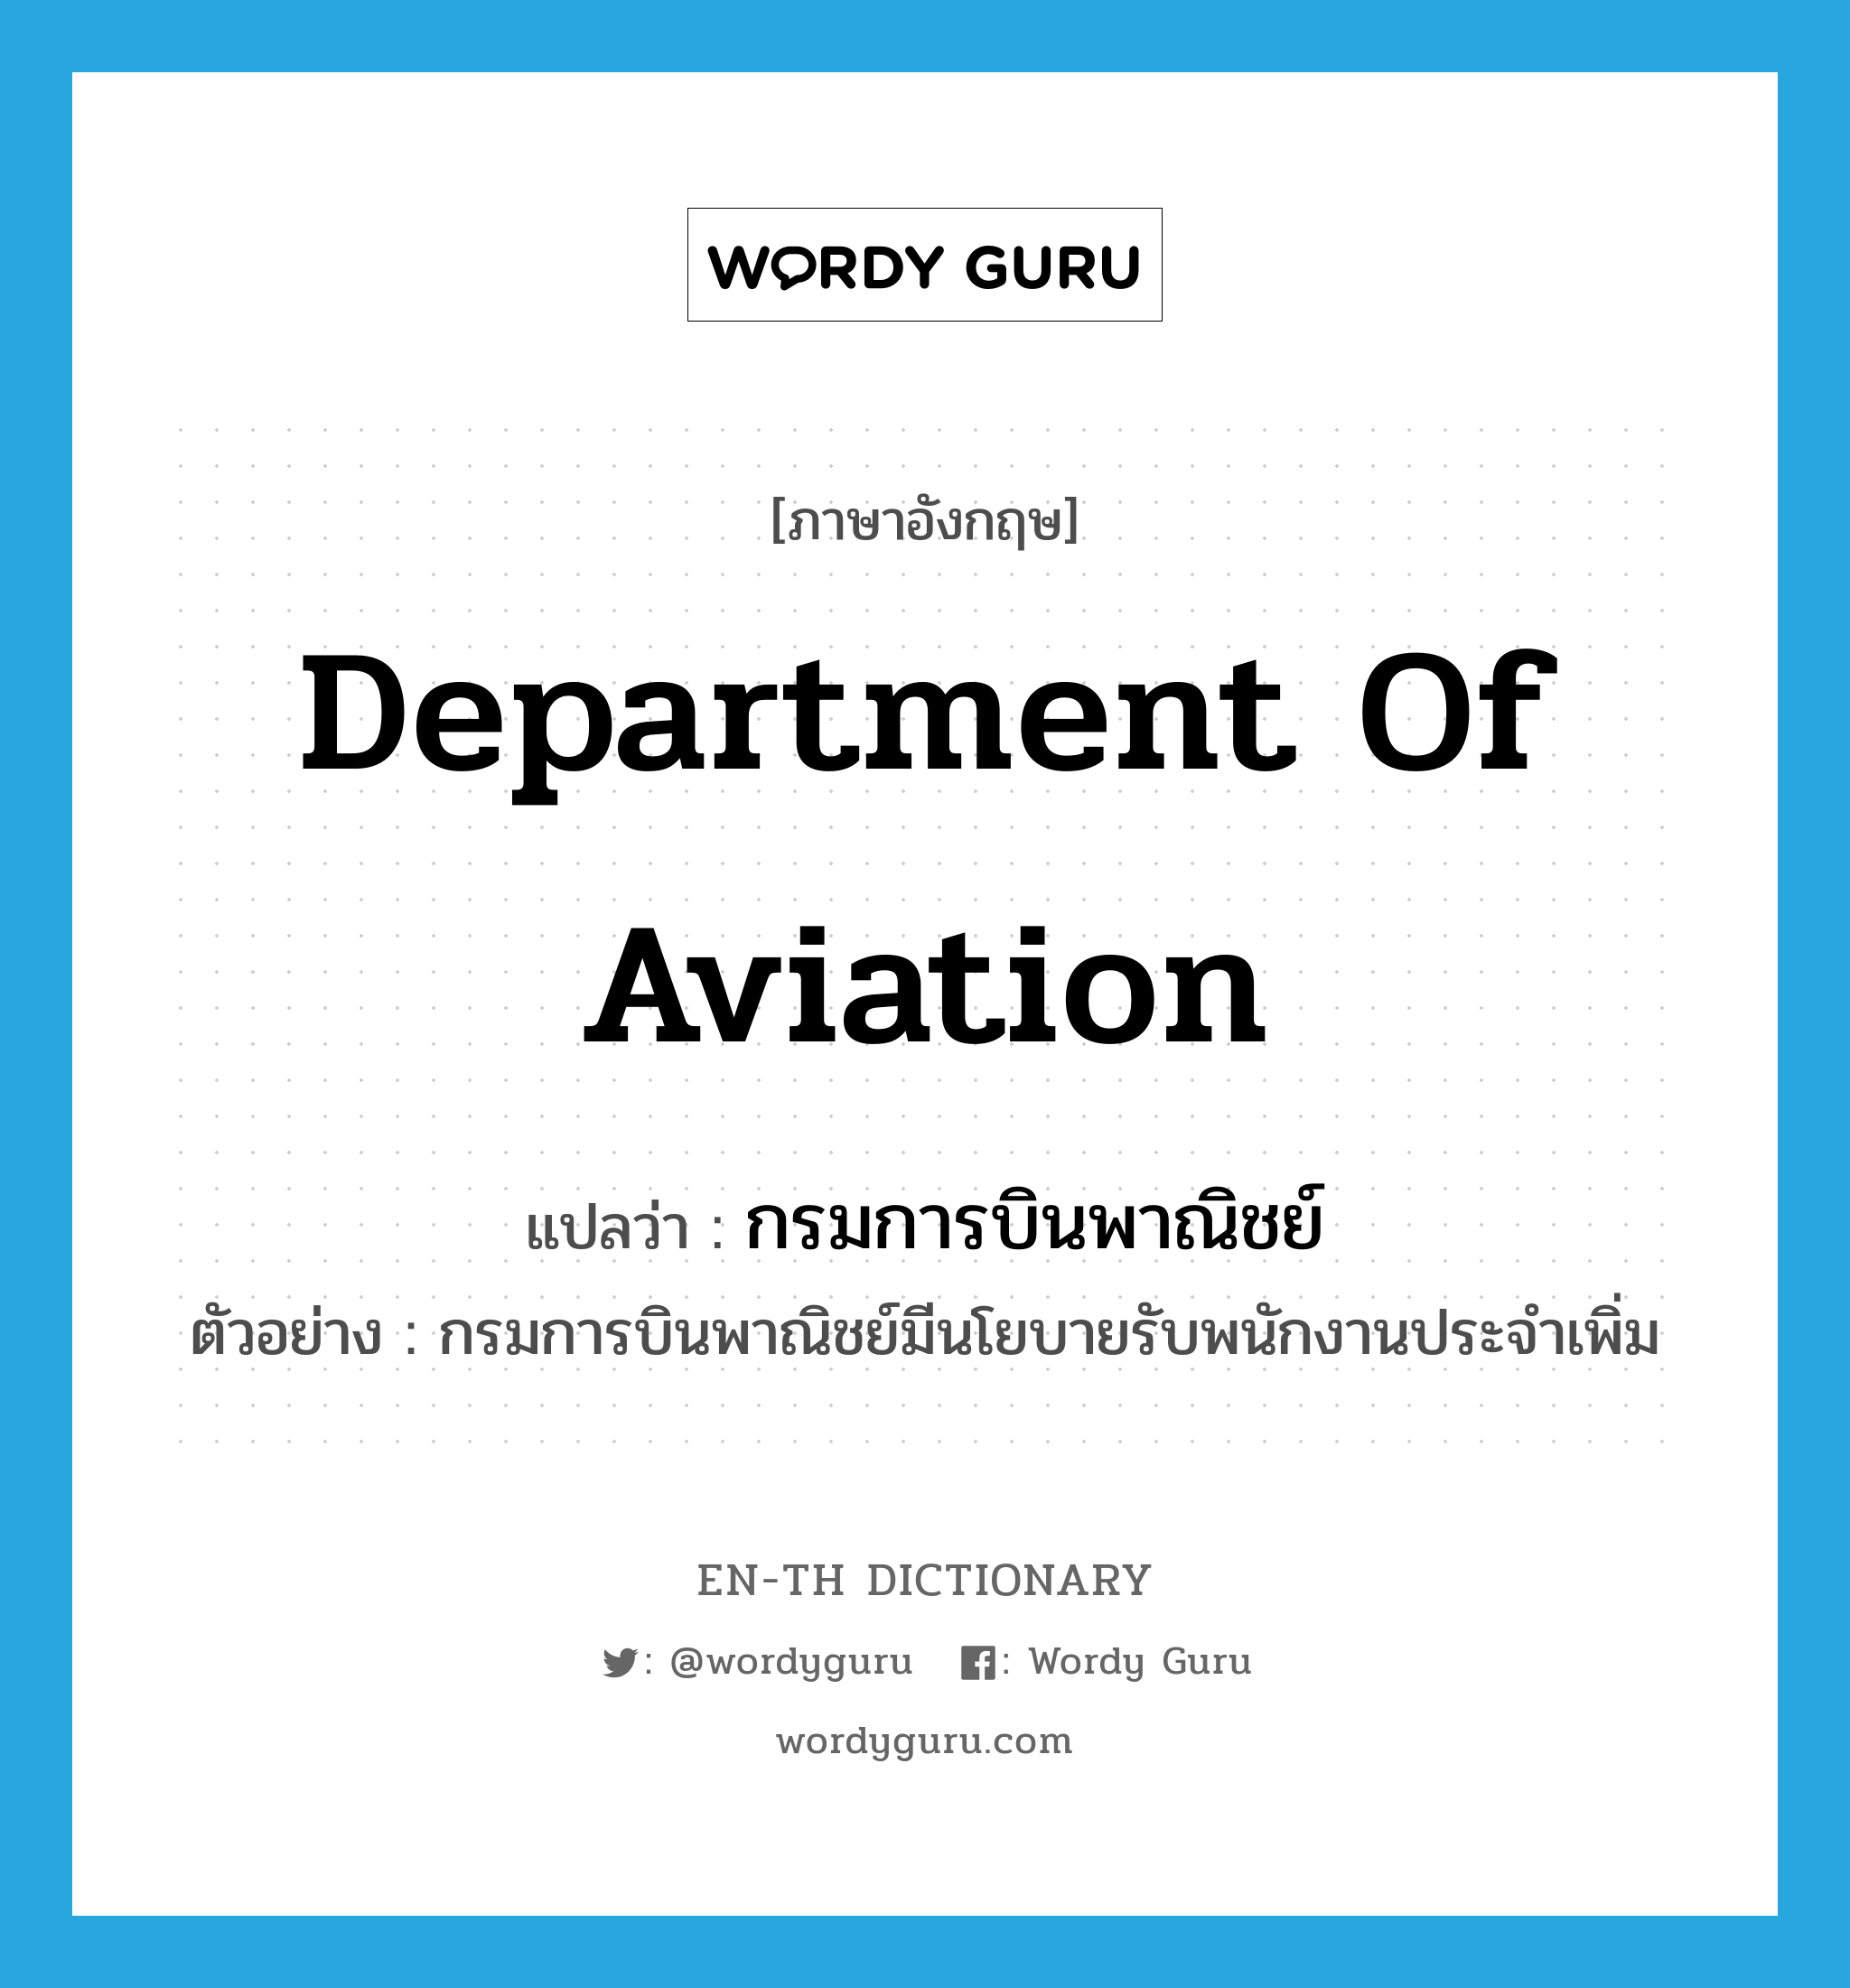 Department of Aviation แปลว่า?, คำศัพท์ภาษาอังกฤษ Department of Aviation แปลว่า กรมการบินพาณิชย์ ประเภท N ตัวอย่าง กรมการบินพาณิชย์มีนโยบายรับพนักงานประจำเพิ่ม หมวด N